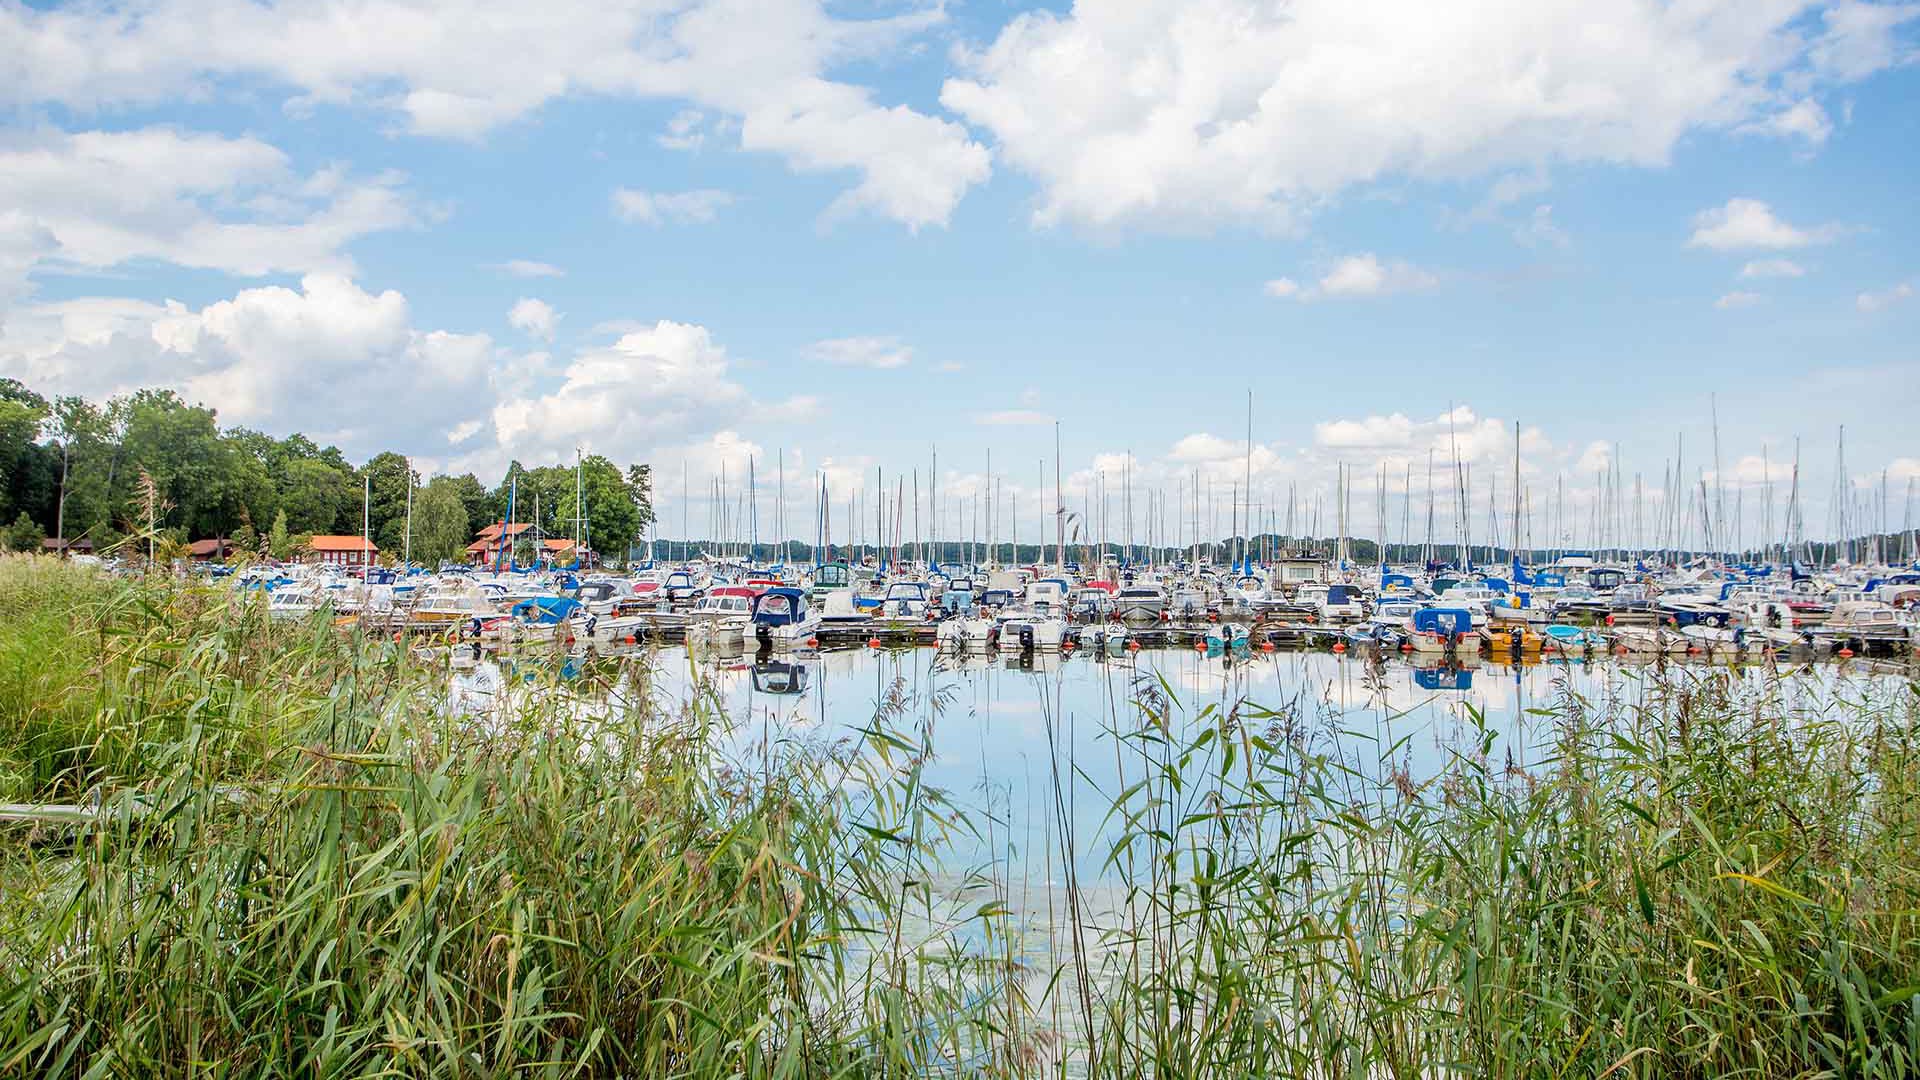 Båtar i Sundbyholms gästhamn en solig sommardag.